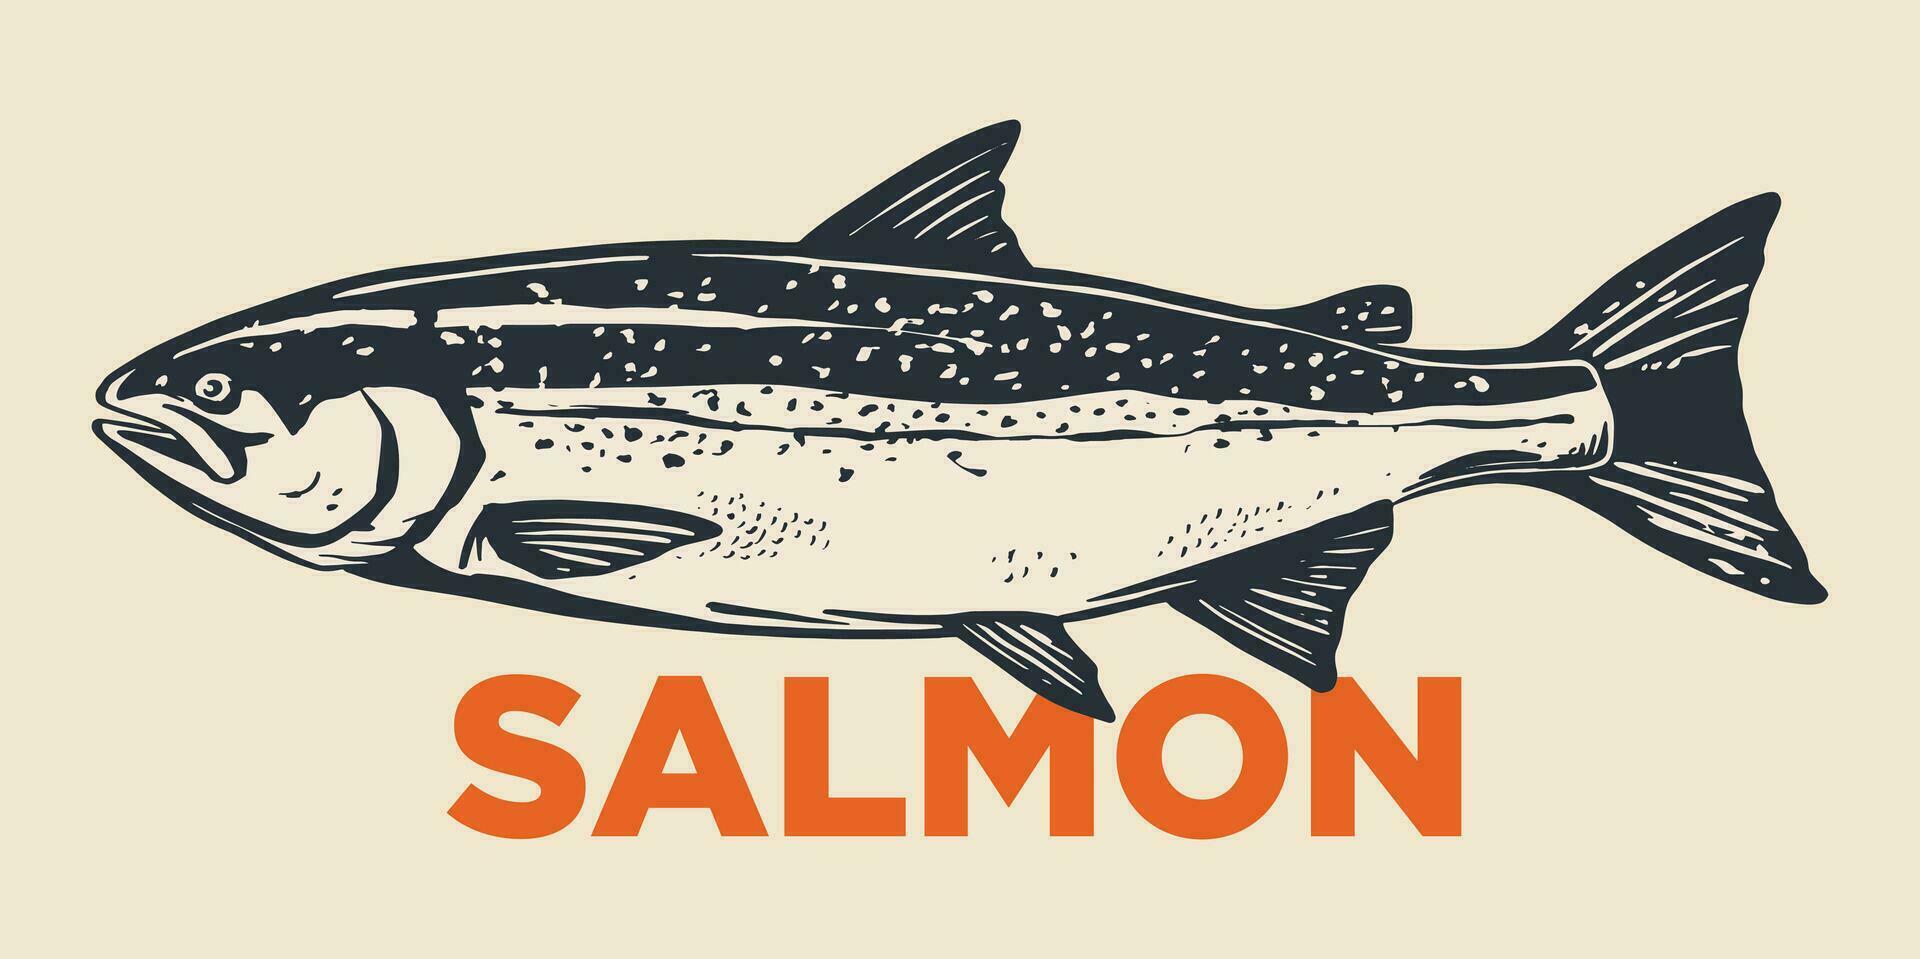 salmón pescado retro línea tinta bosquejo. mano dibujado vector ilustración de pescado aislado.